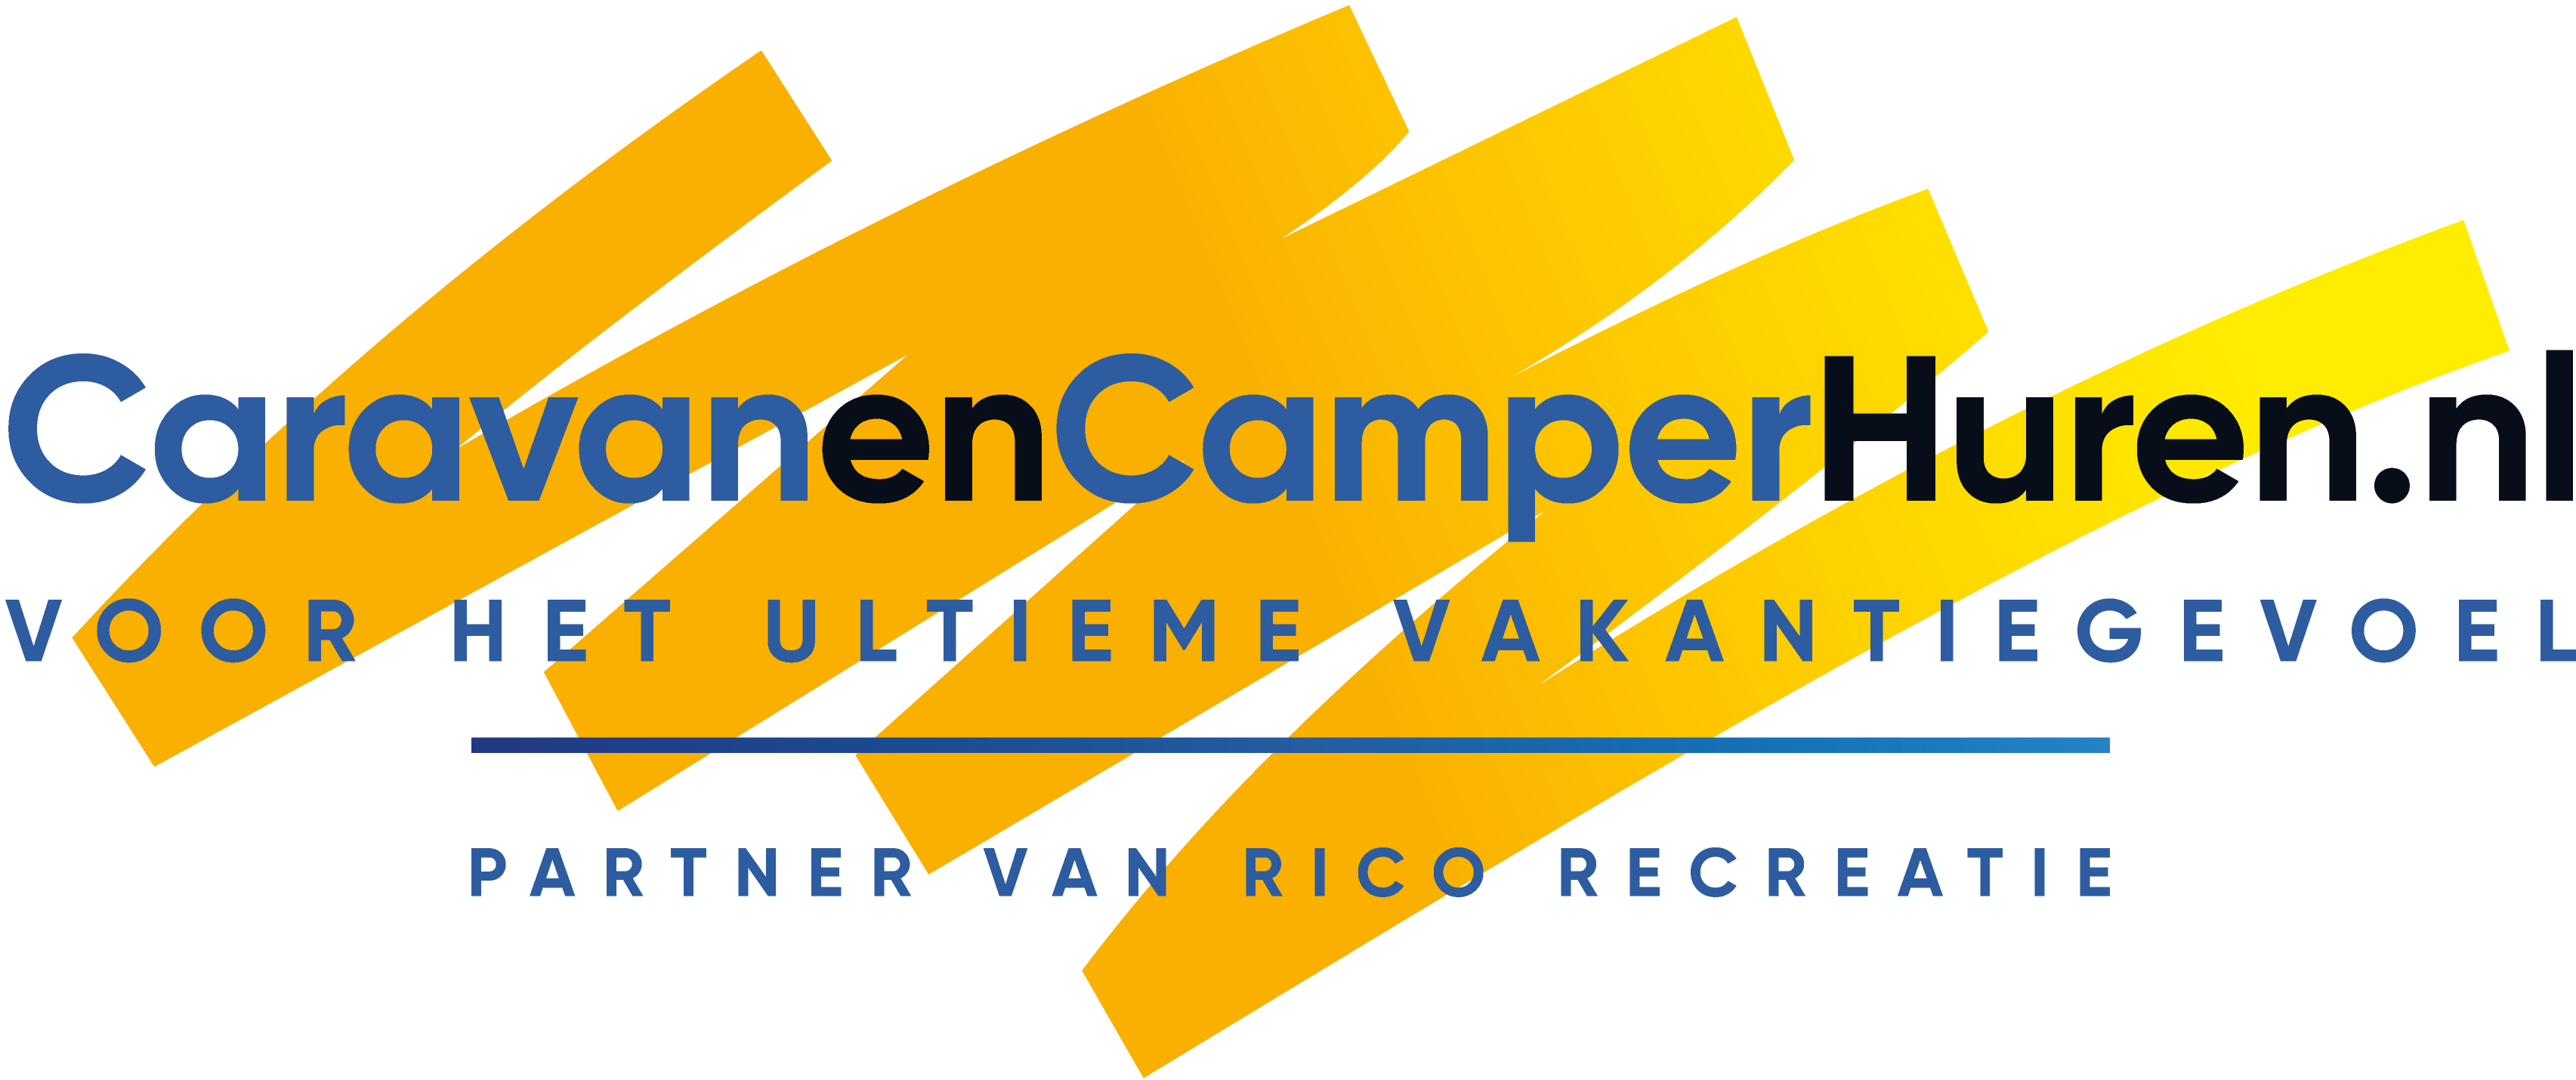 CaravanenCamperhuren.nl - Verhuur van Caravans en Campers